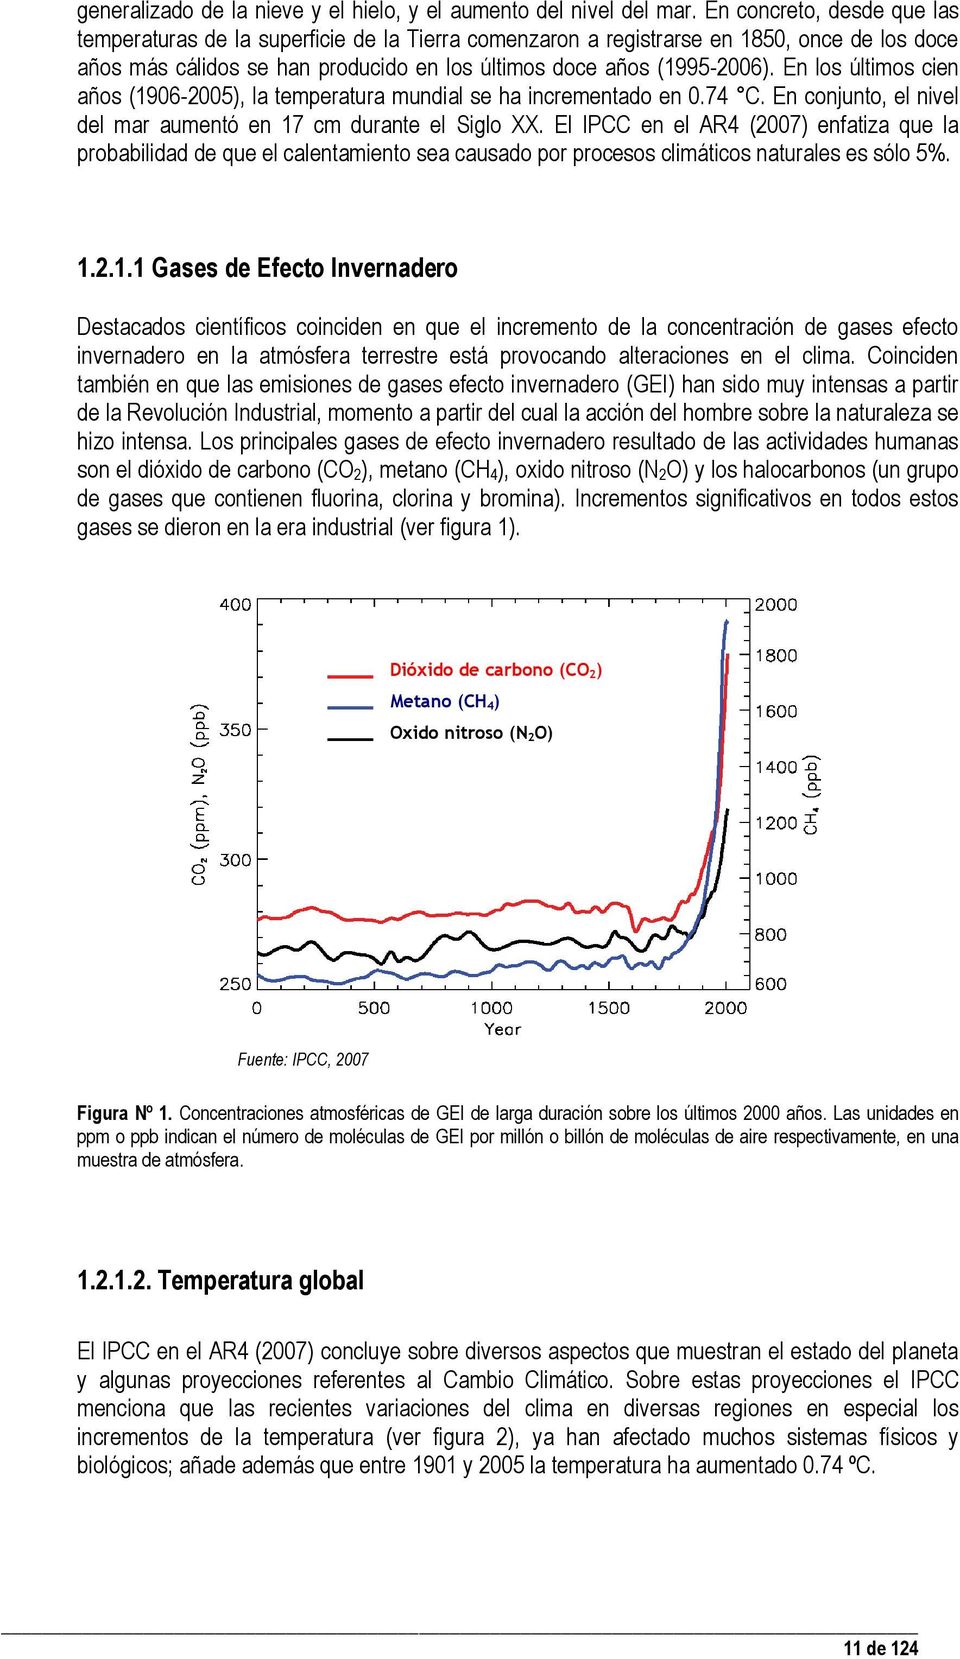 En los últimos cien años (1906-2005), la temperatura mundial se ha incrementado en 0.74 C. En conjunto, el nivel del mar aumentó en 17 cm durante el Siglo XX.